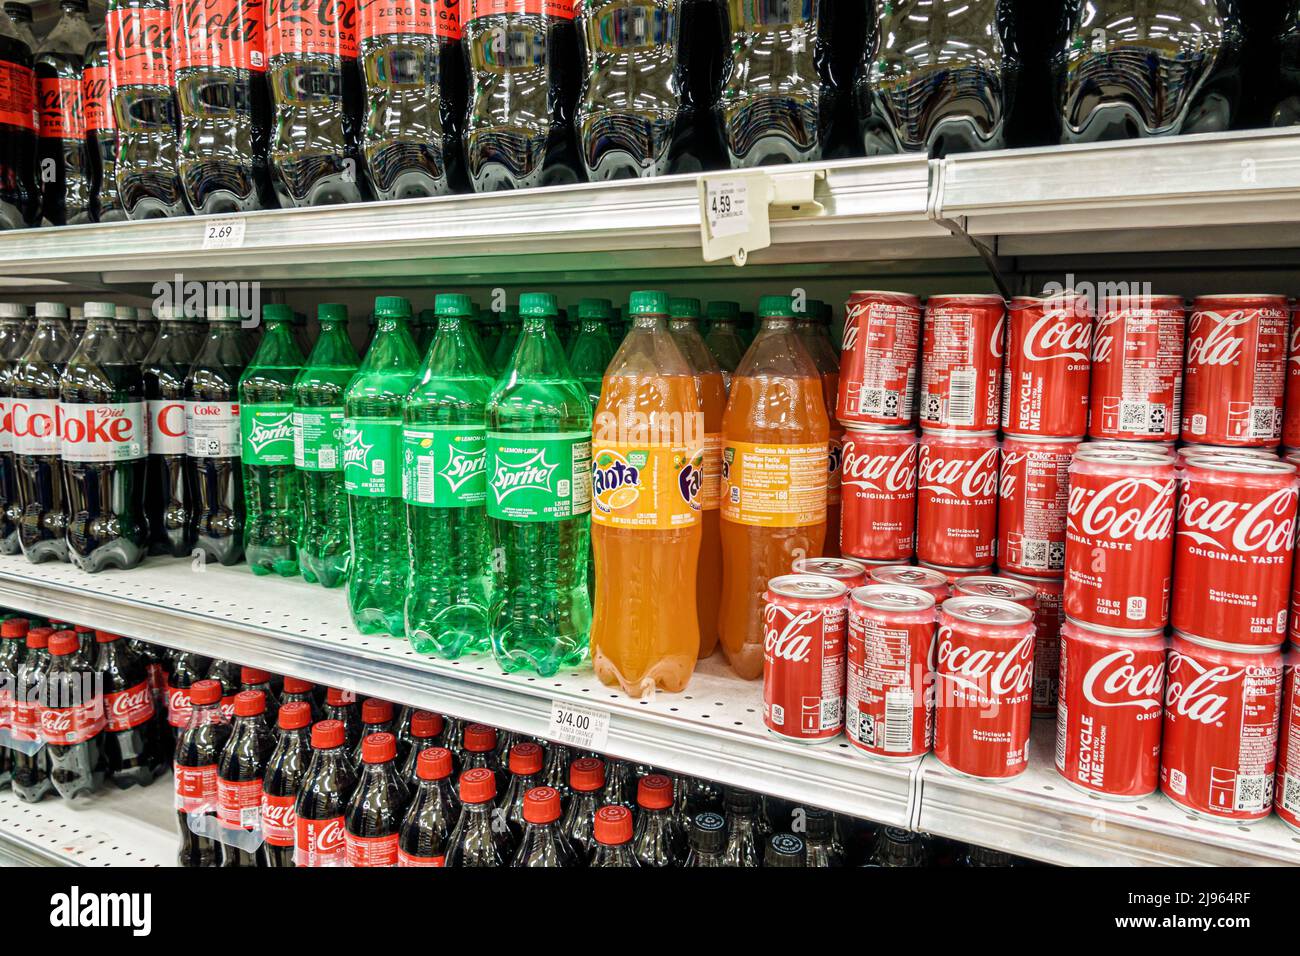 Miami Beach Florida, Publix Lebensmittelgeschäft Supermarkt Display Verkauf Regal Regale im Inneren, Coca Cola Produkte Softdrinks Cola Soda Stockfoto